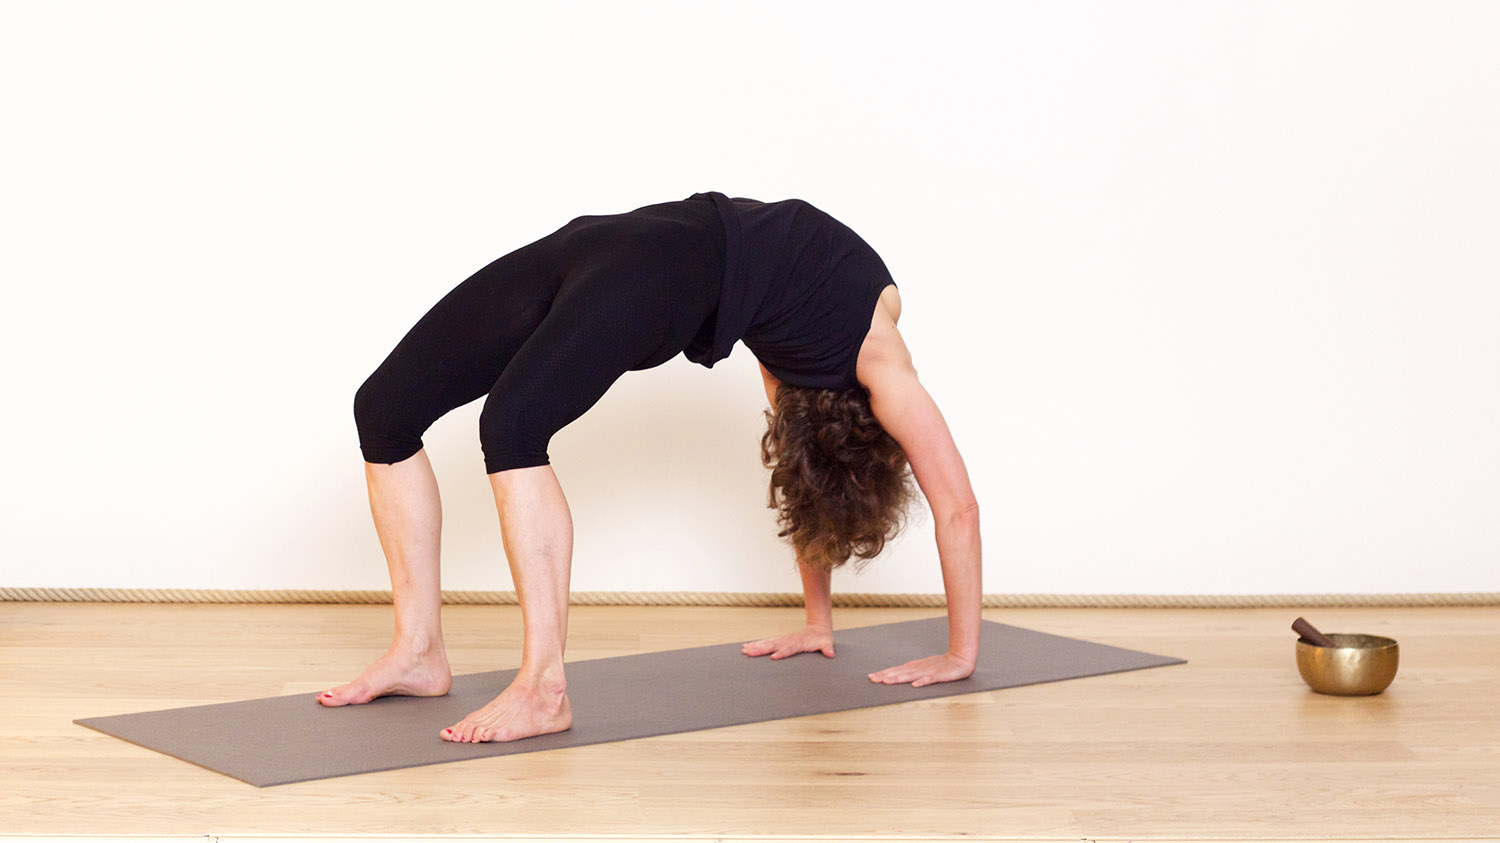 La posture du pont | Cours de yoga en ligne avec Delphine Denis | Yoga Vinyasa